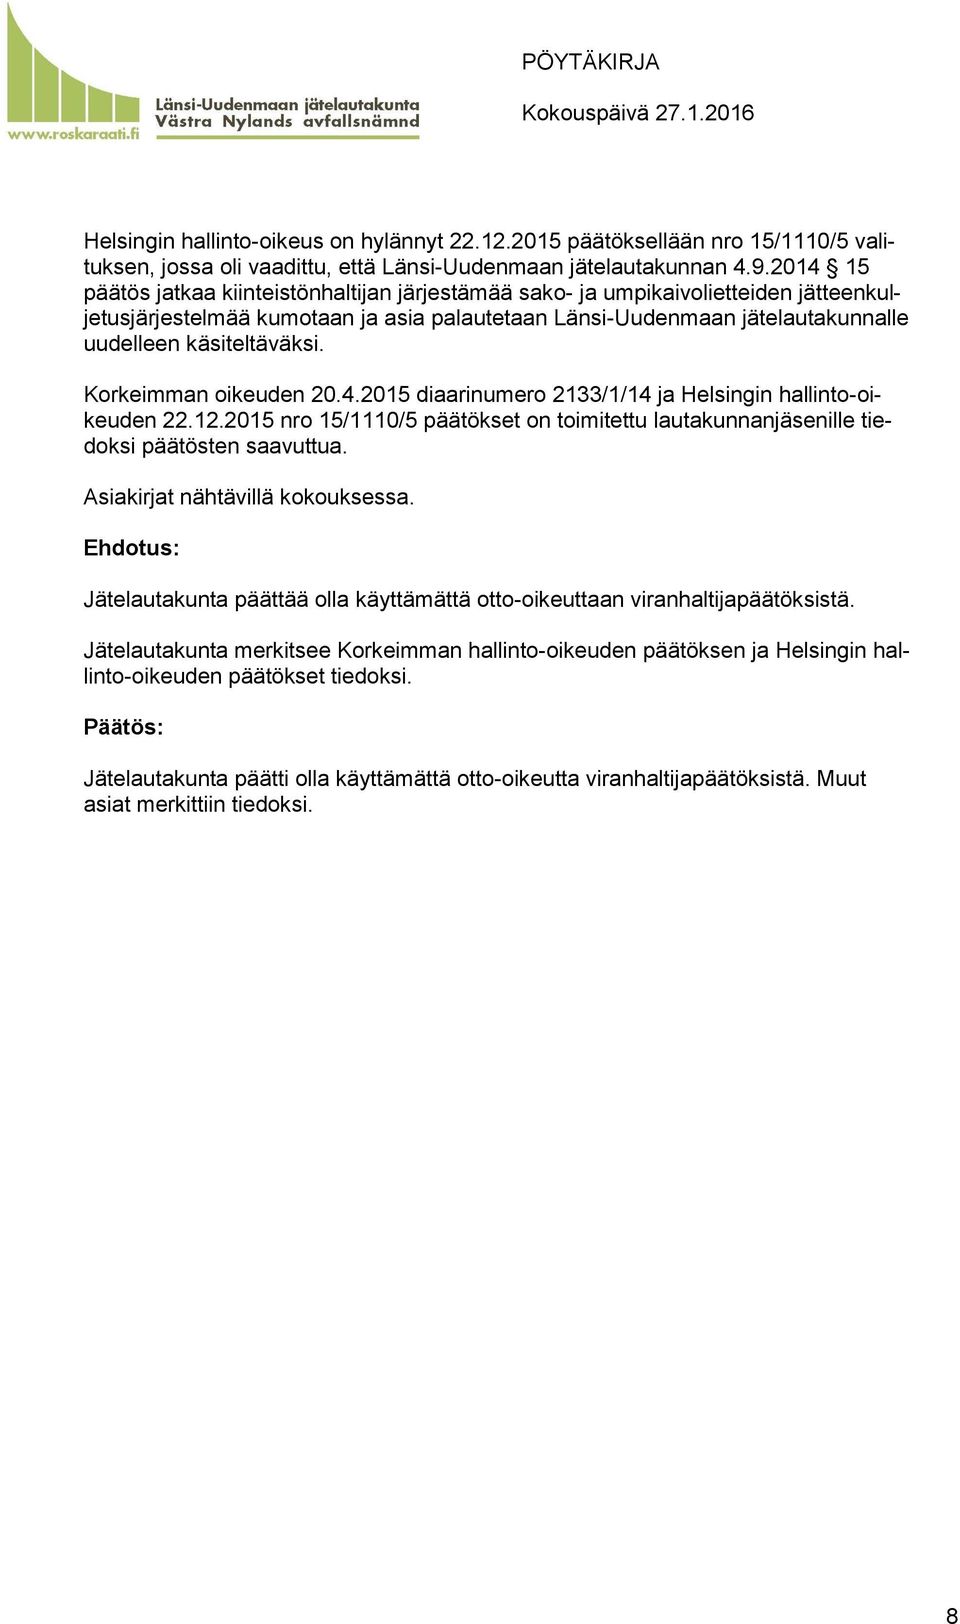 Korkeimman oikeuden 20.4.2015 diaarinumero 2133/1/14 ja Helsingin hallinto-oikeuden 22.12.2015 nro 15/1110/5 päätökset on toimitettu lautakunnanjäsenille tiedoksi päätösten saavuttua.